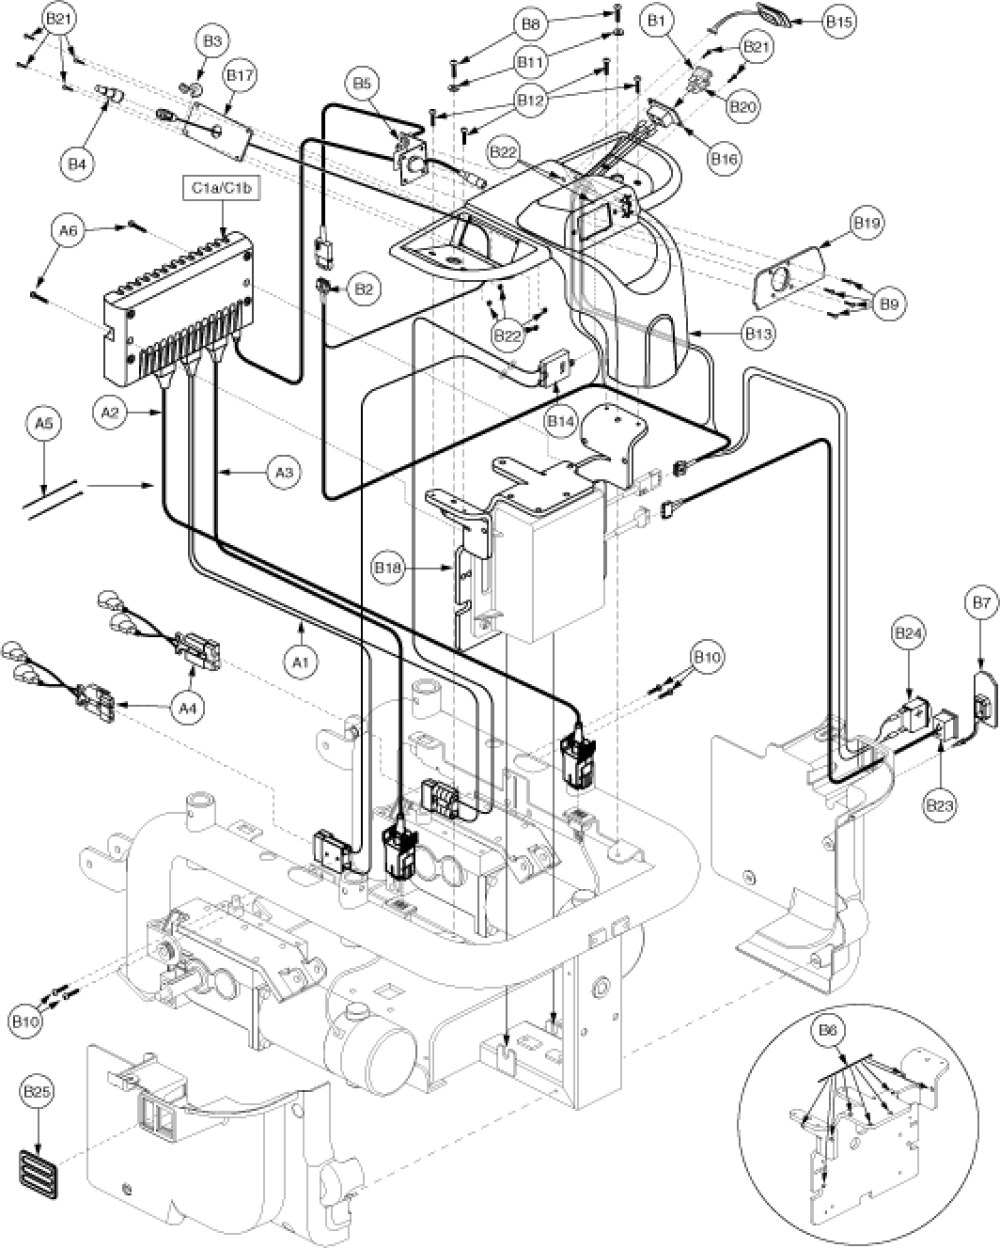 Remote Plus Tray, Quantum, Q1121, Eleasmb4412 parts diagram